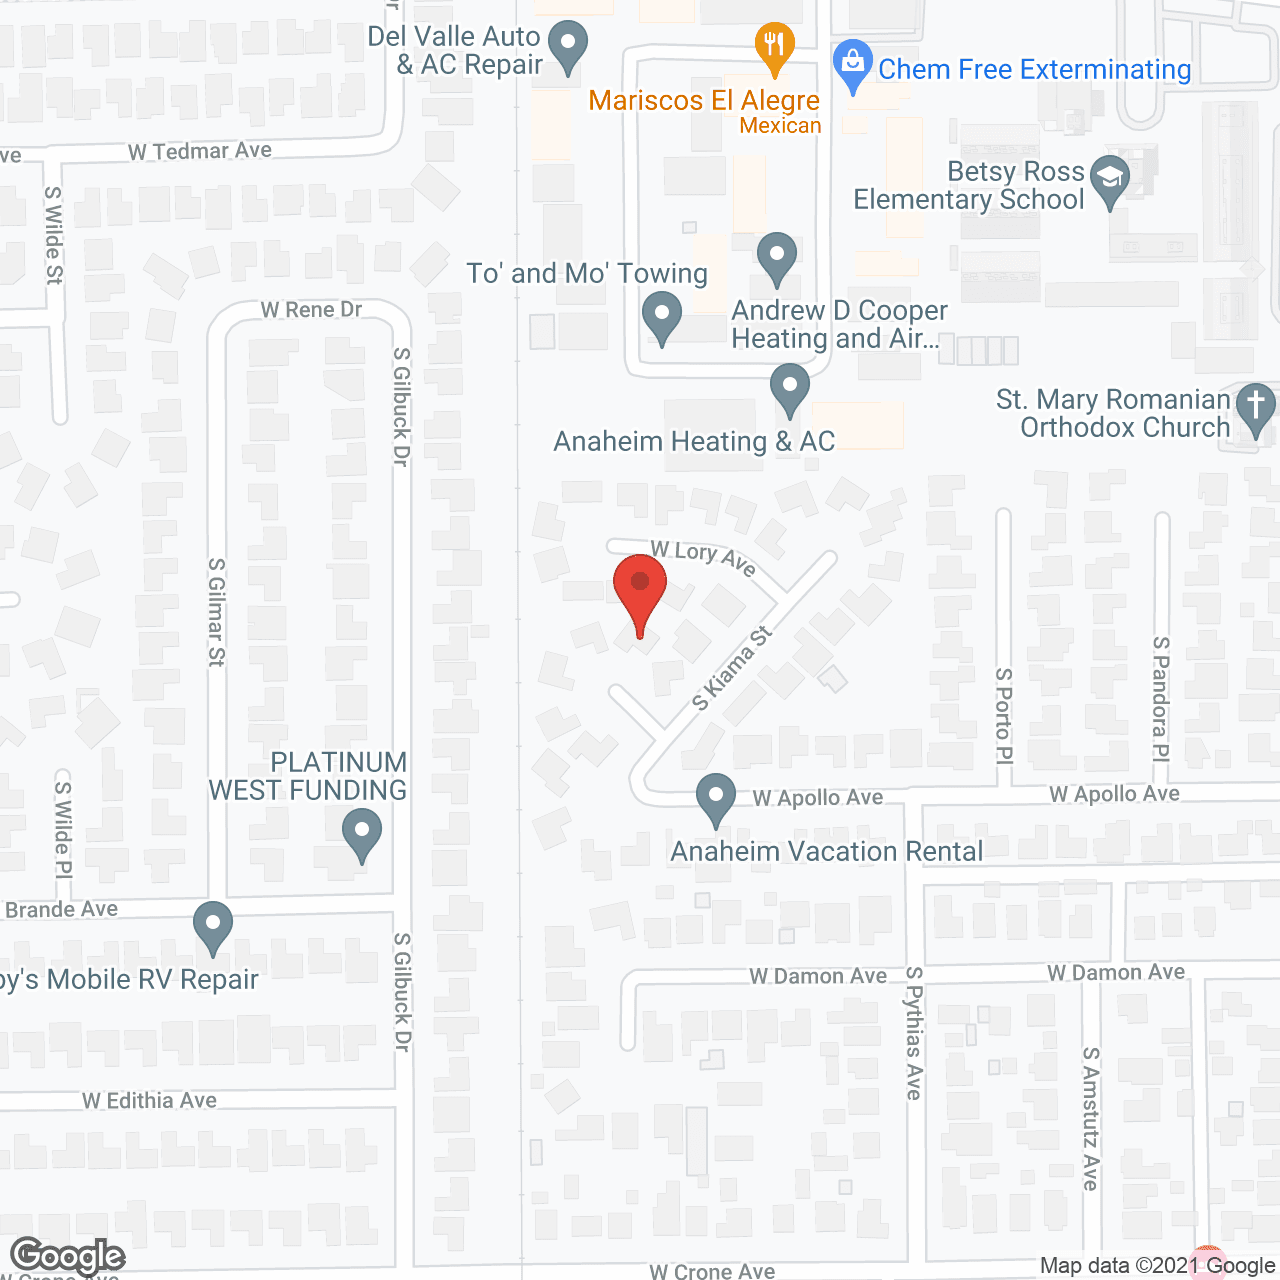 Anaheim Villa Guest Home in google map